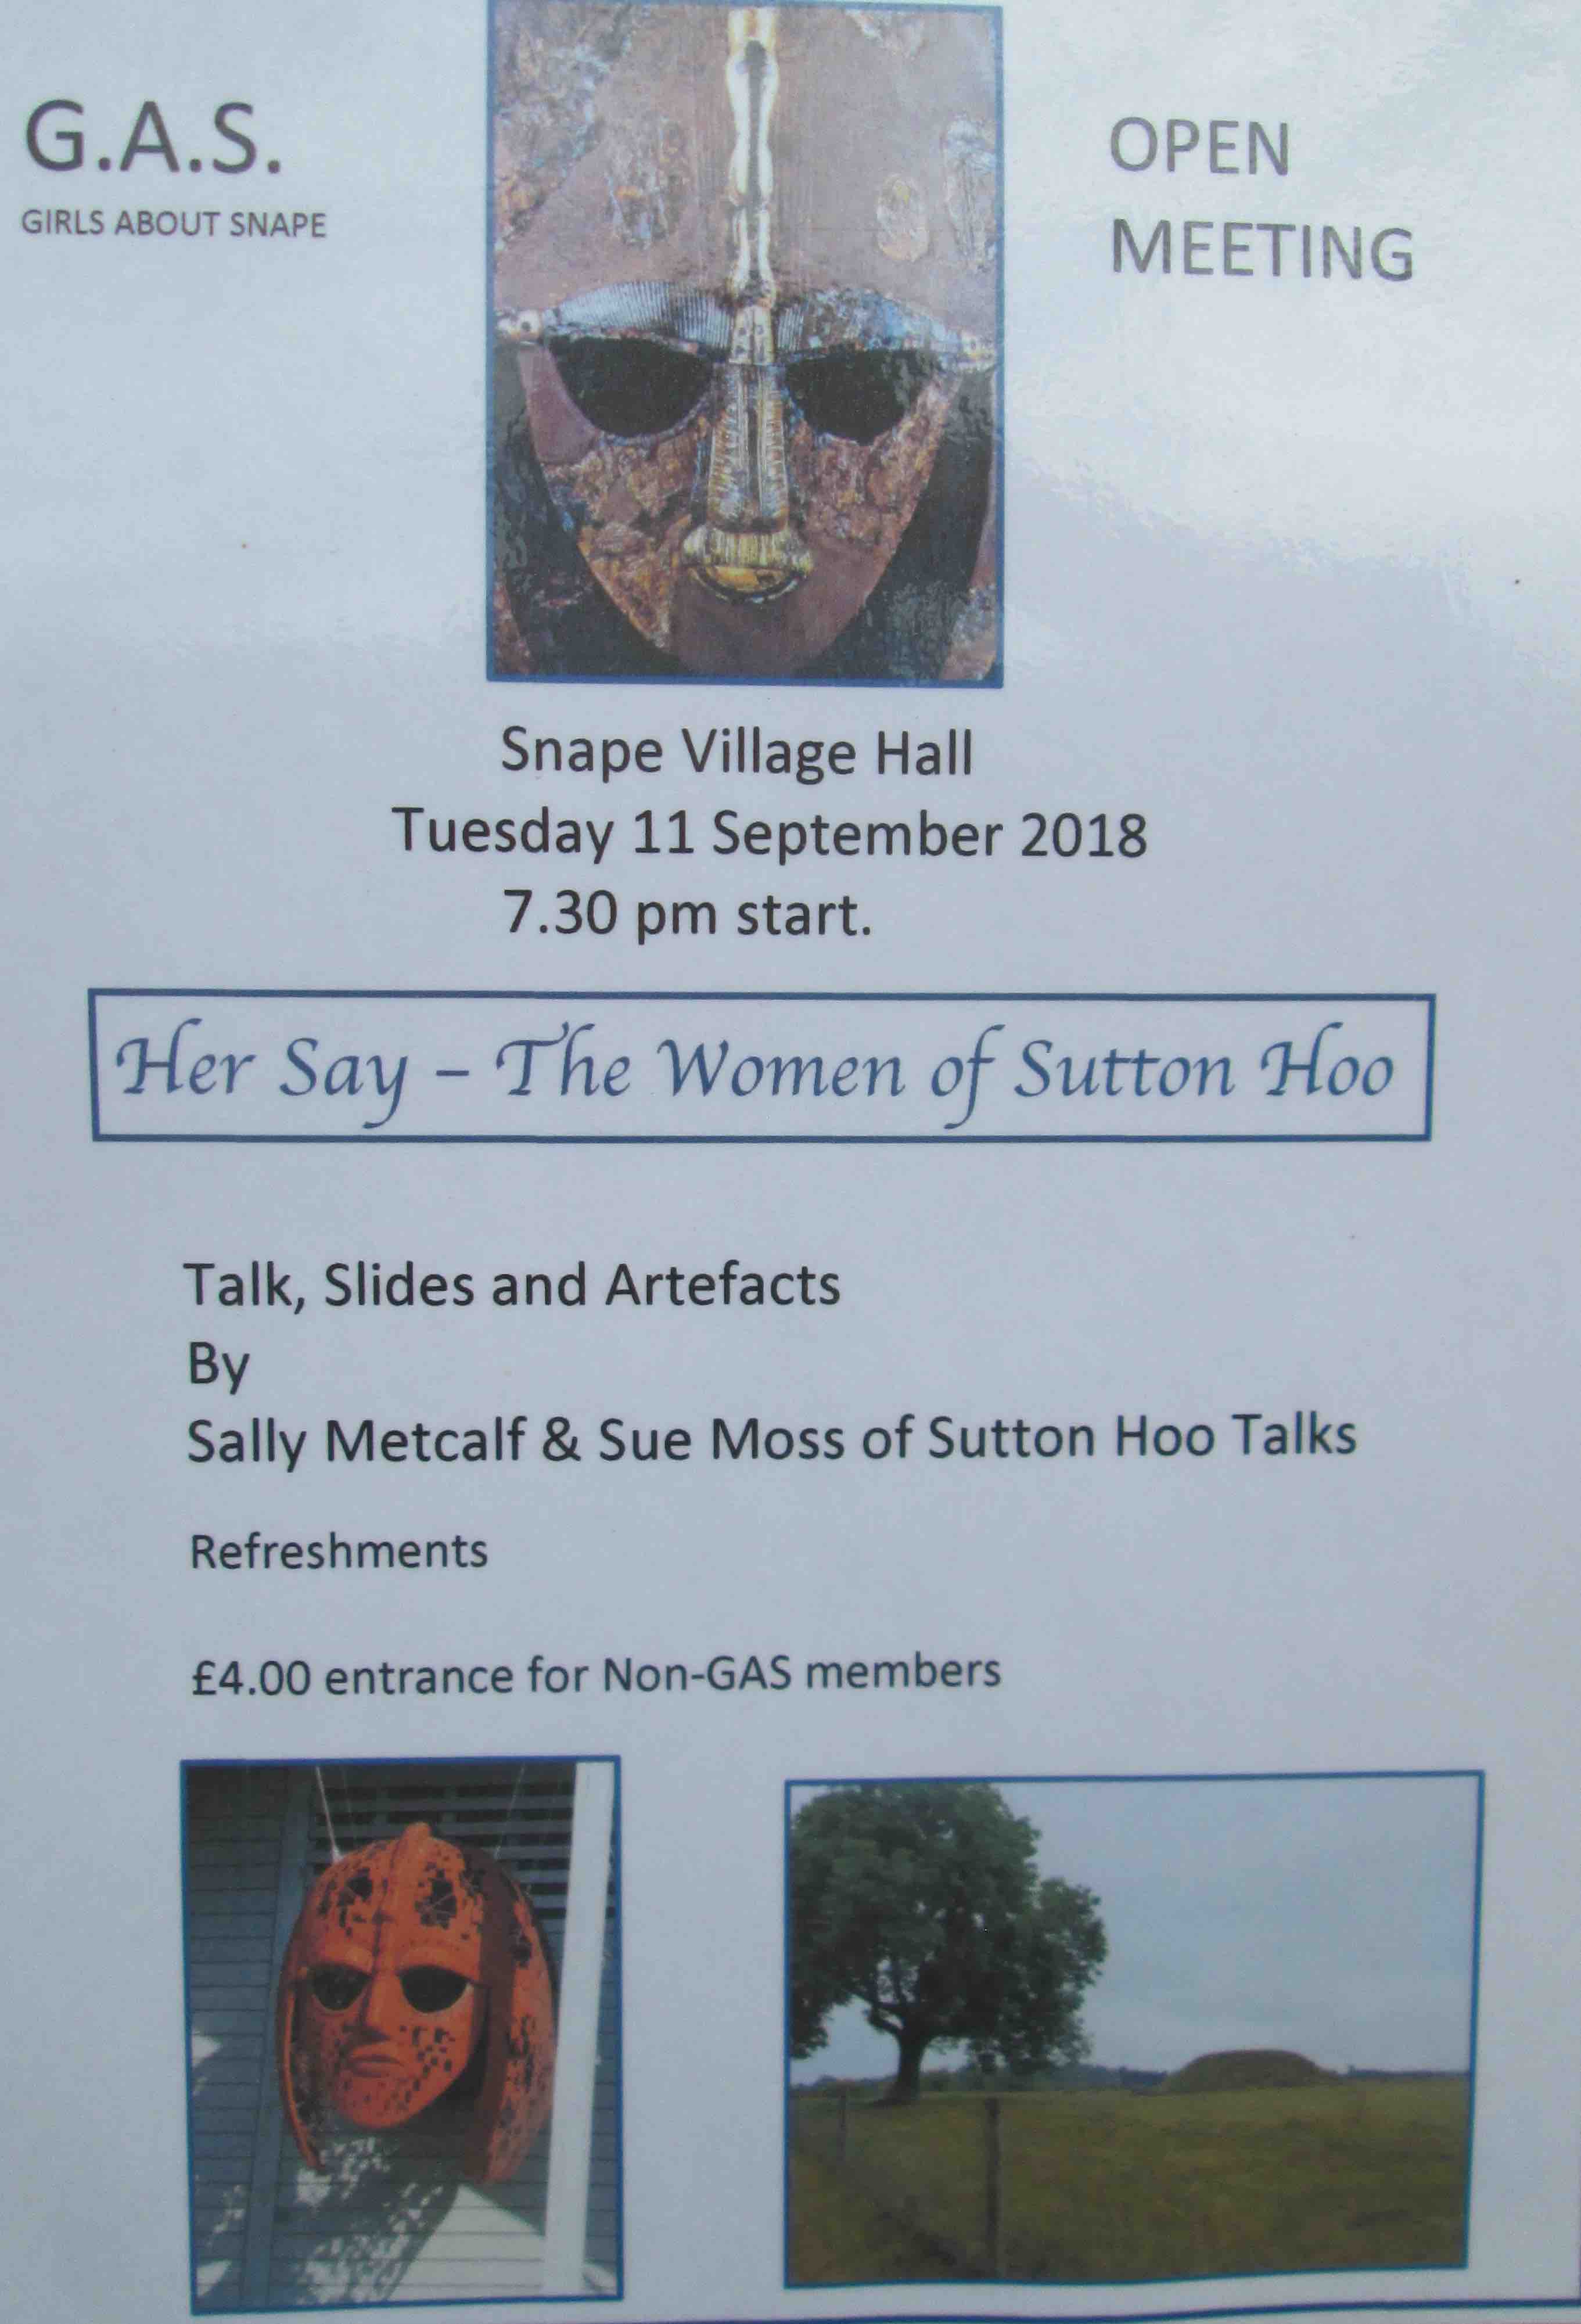 Women of Sutton Hoo